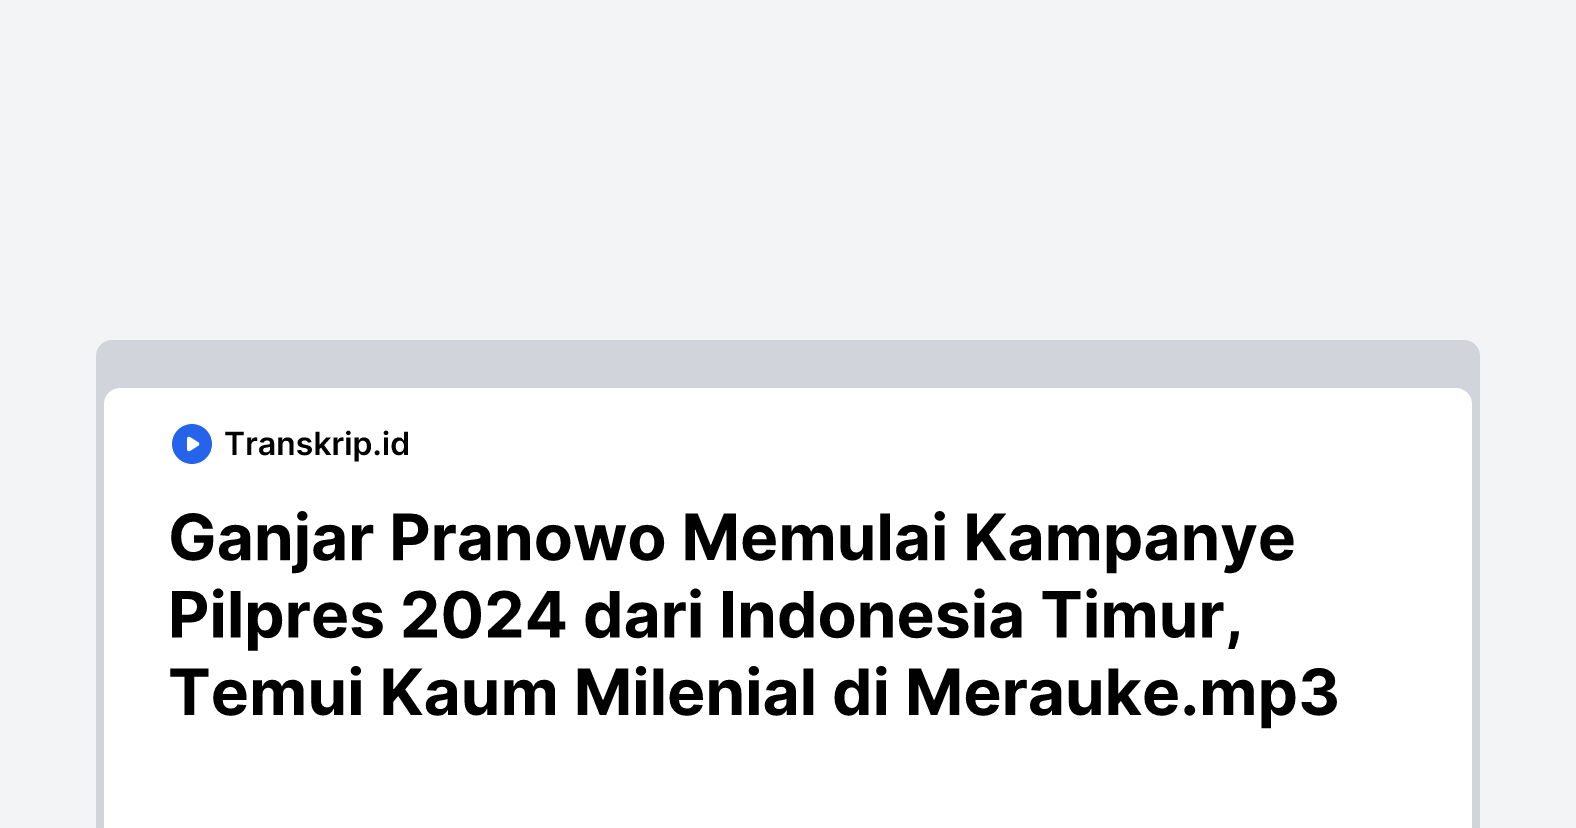 Ganjar Pranowo Memulai Kampanye Pilpres 2024 dari Indonesia Timur, Temui Kaum Milenial di Merauke.mp3